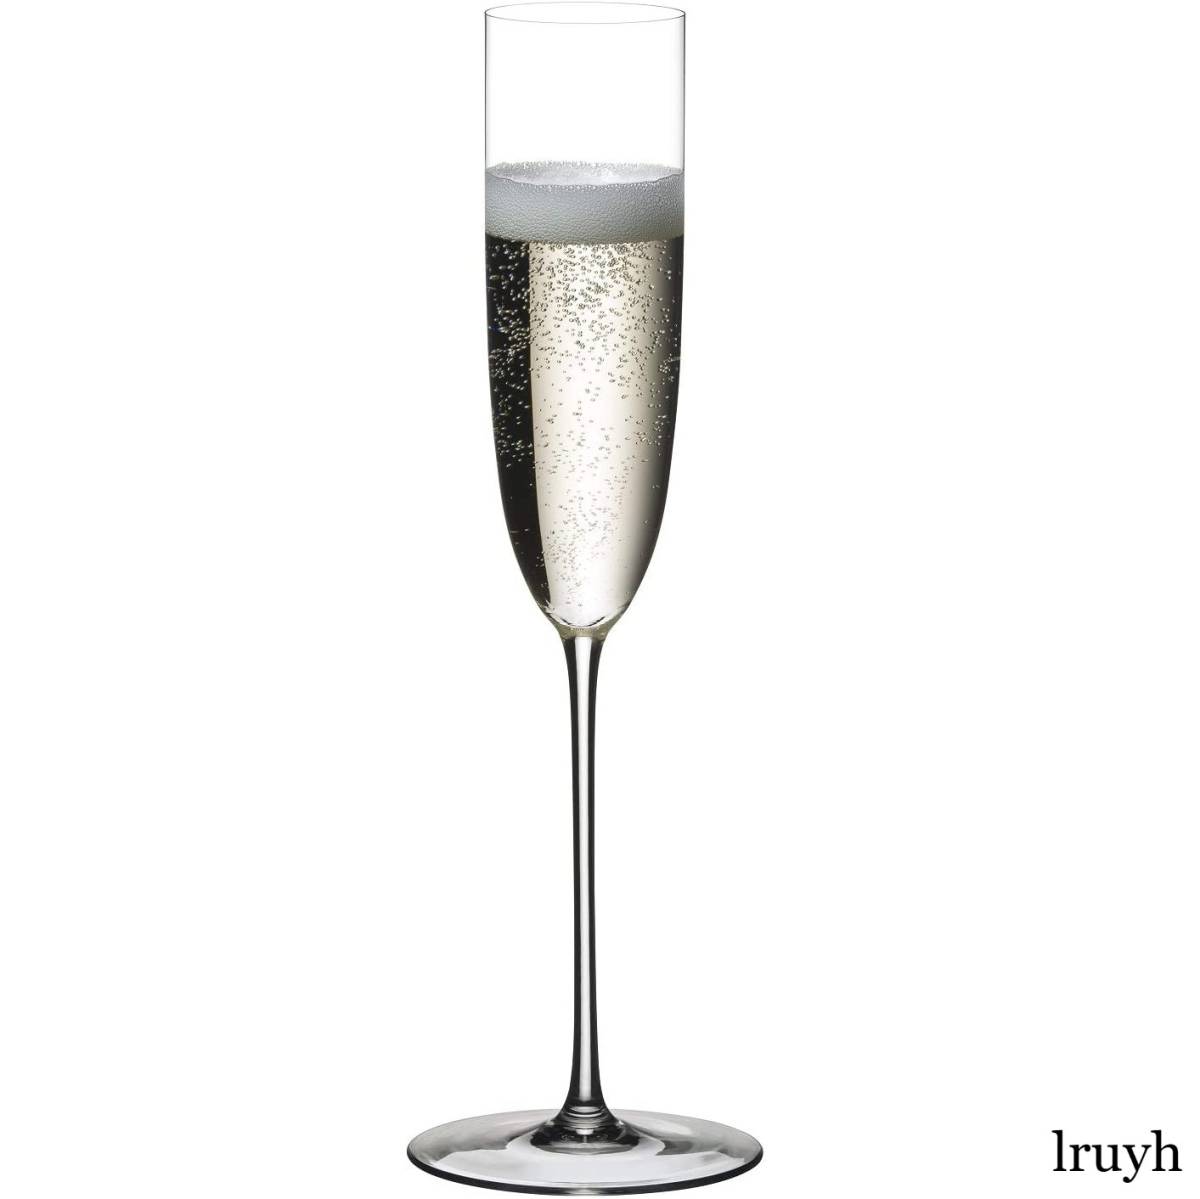 シャンパングラス リーデル Riedel スーパーレジェーロ シャンハン・フルート ハンドメイド スパークリングワイン プレゼント 正規品